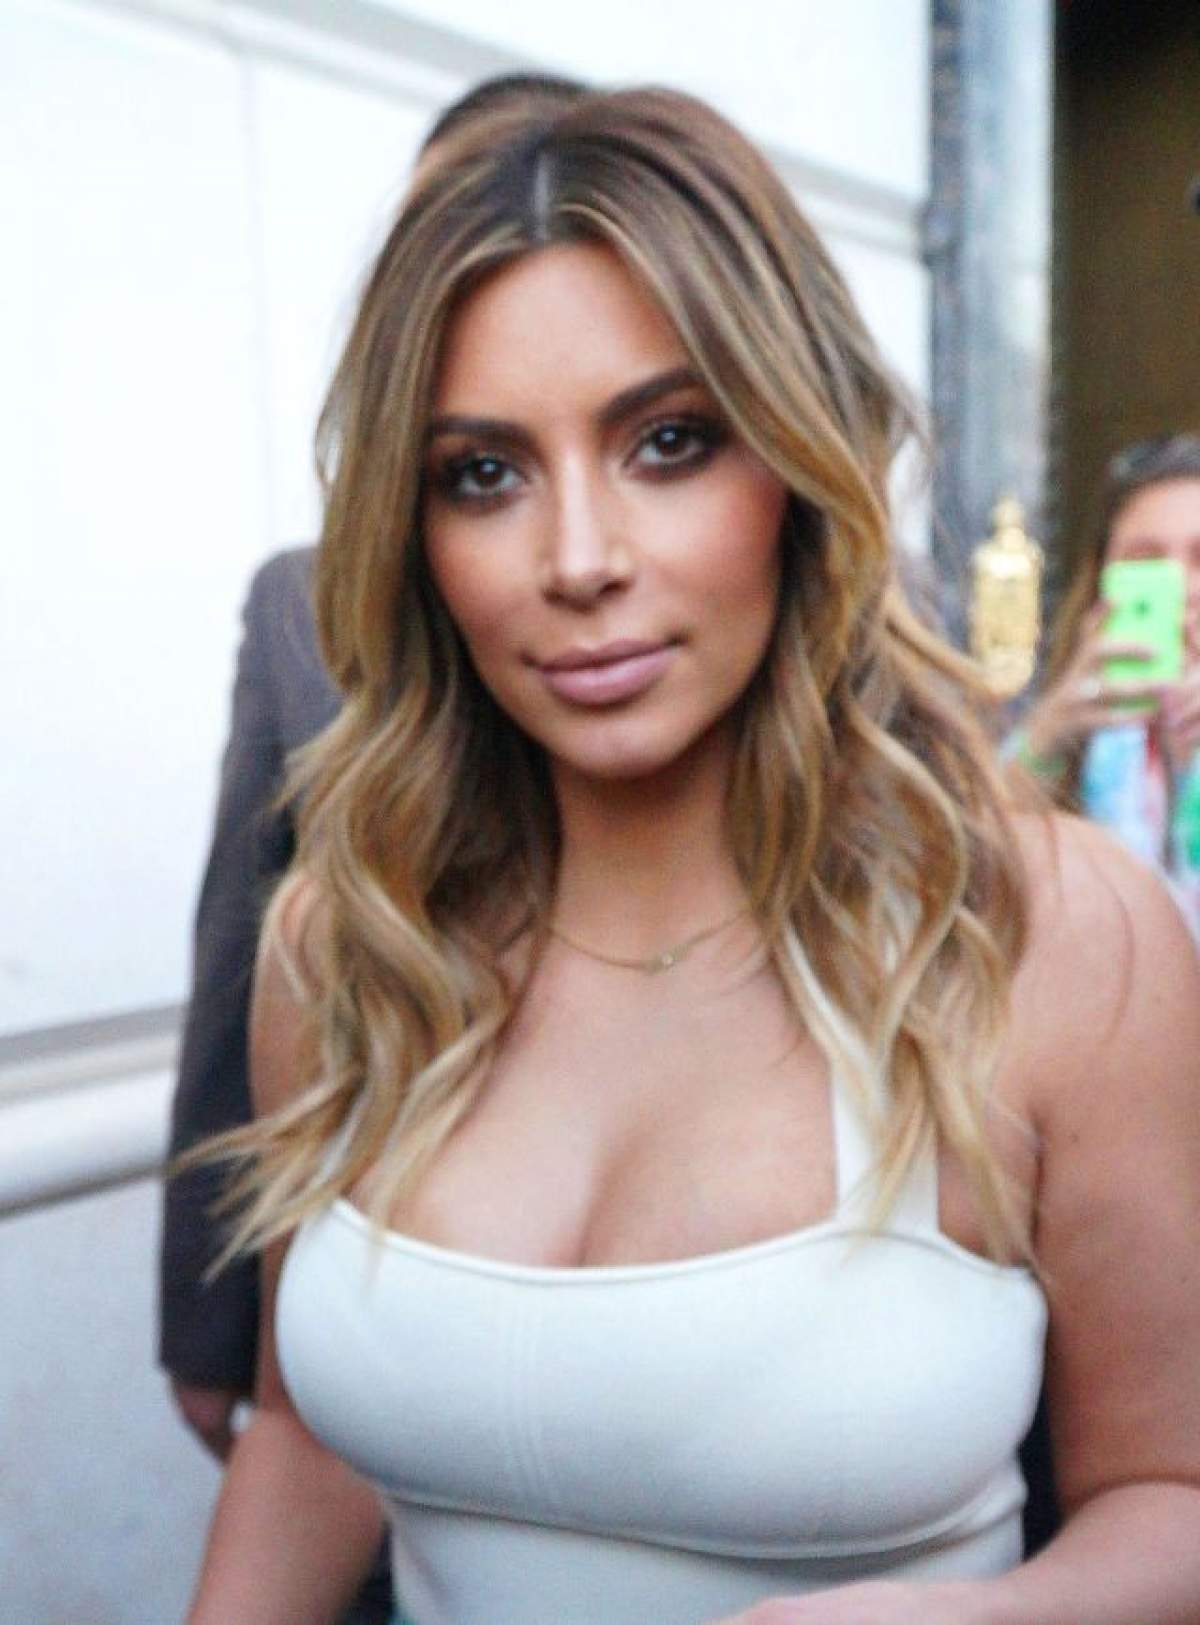 Kim Kardashian "îşi îndeasă" formele generoase în haine minuscule! Cea mai recentă apariţie a vedetei a stârnit controverse!